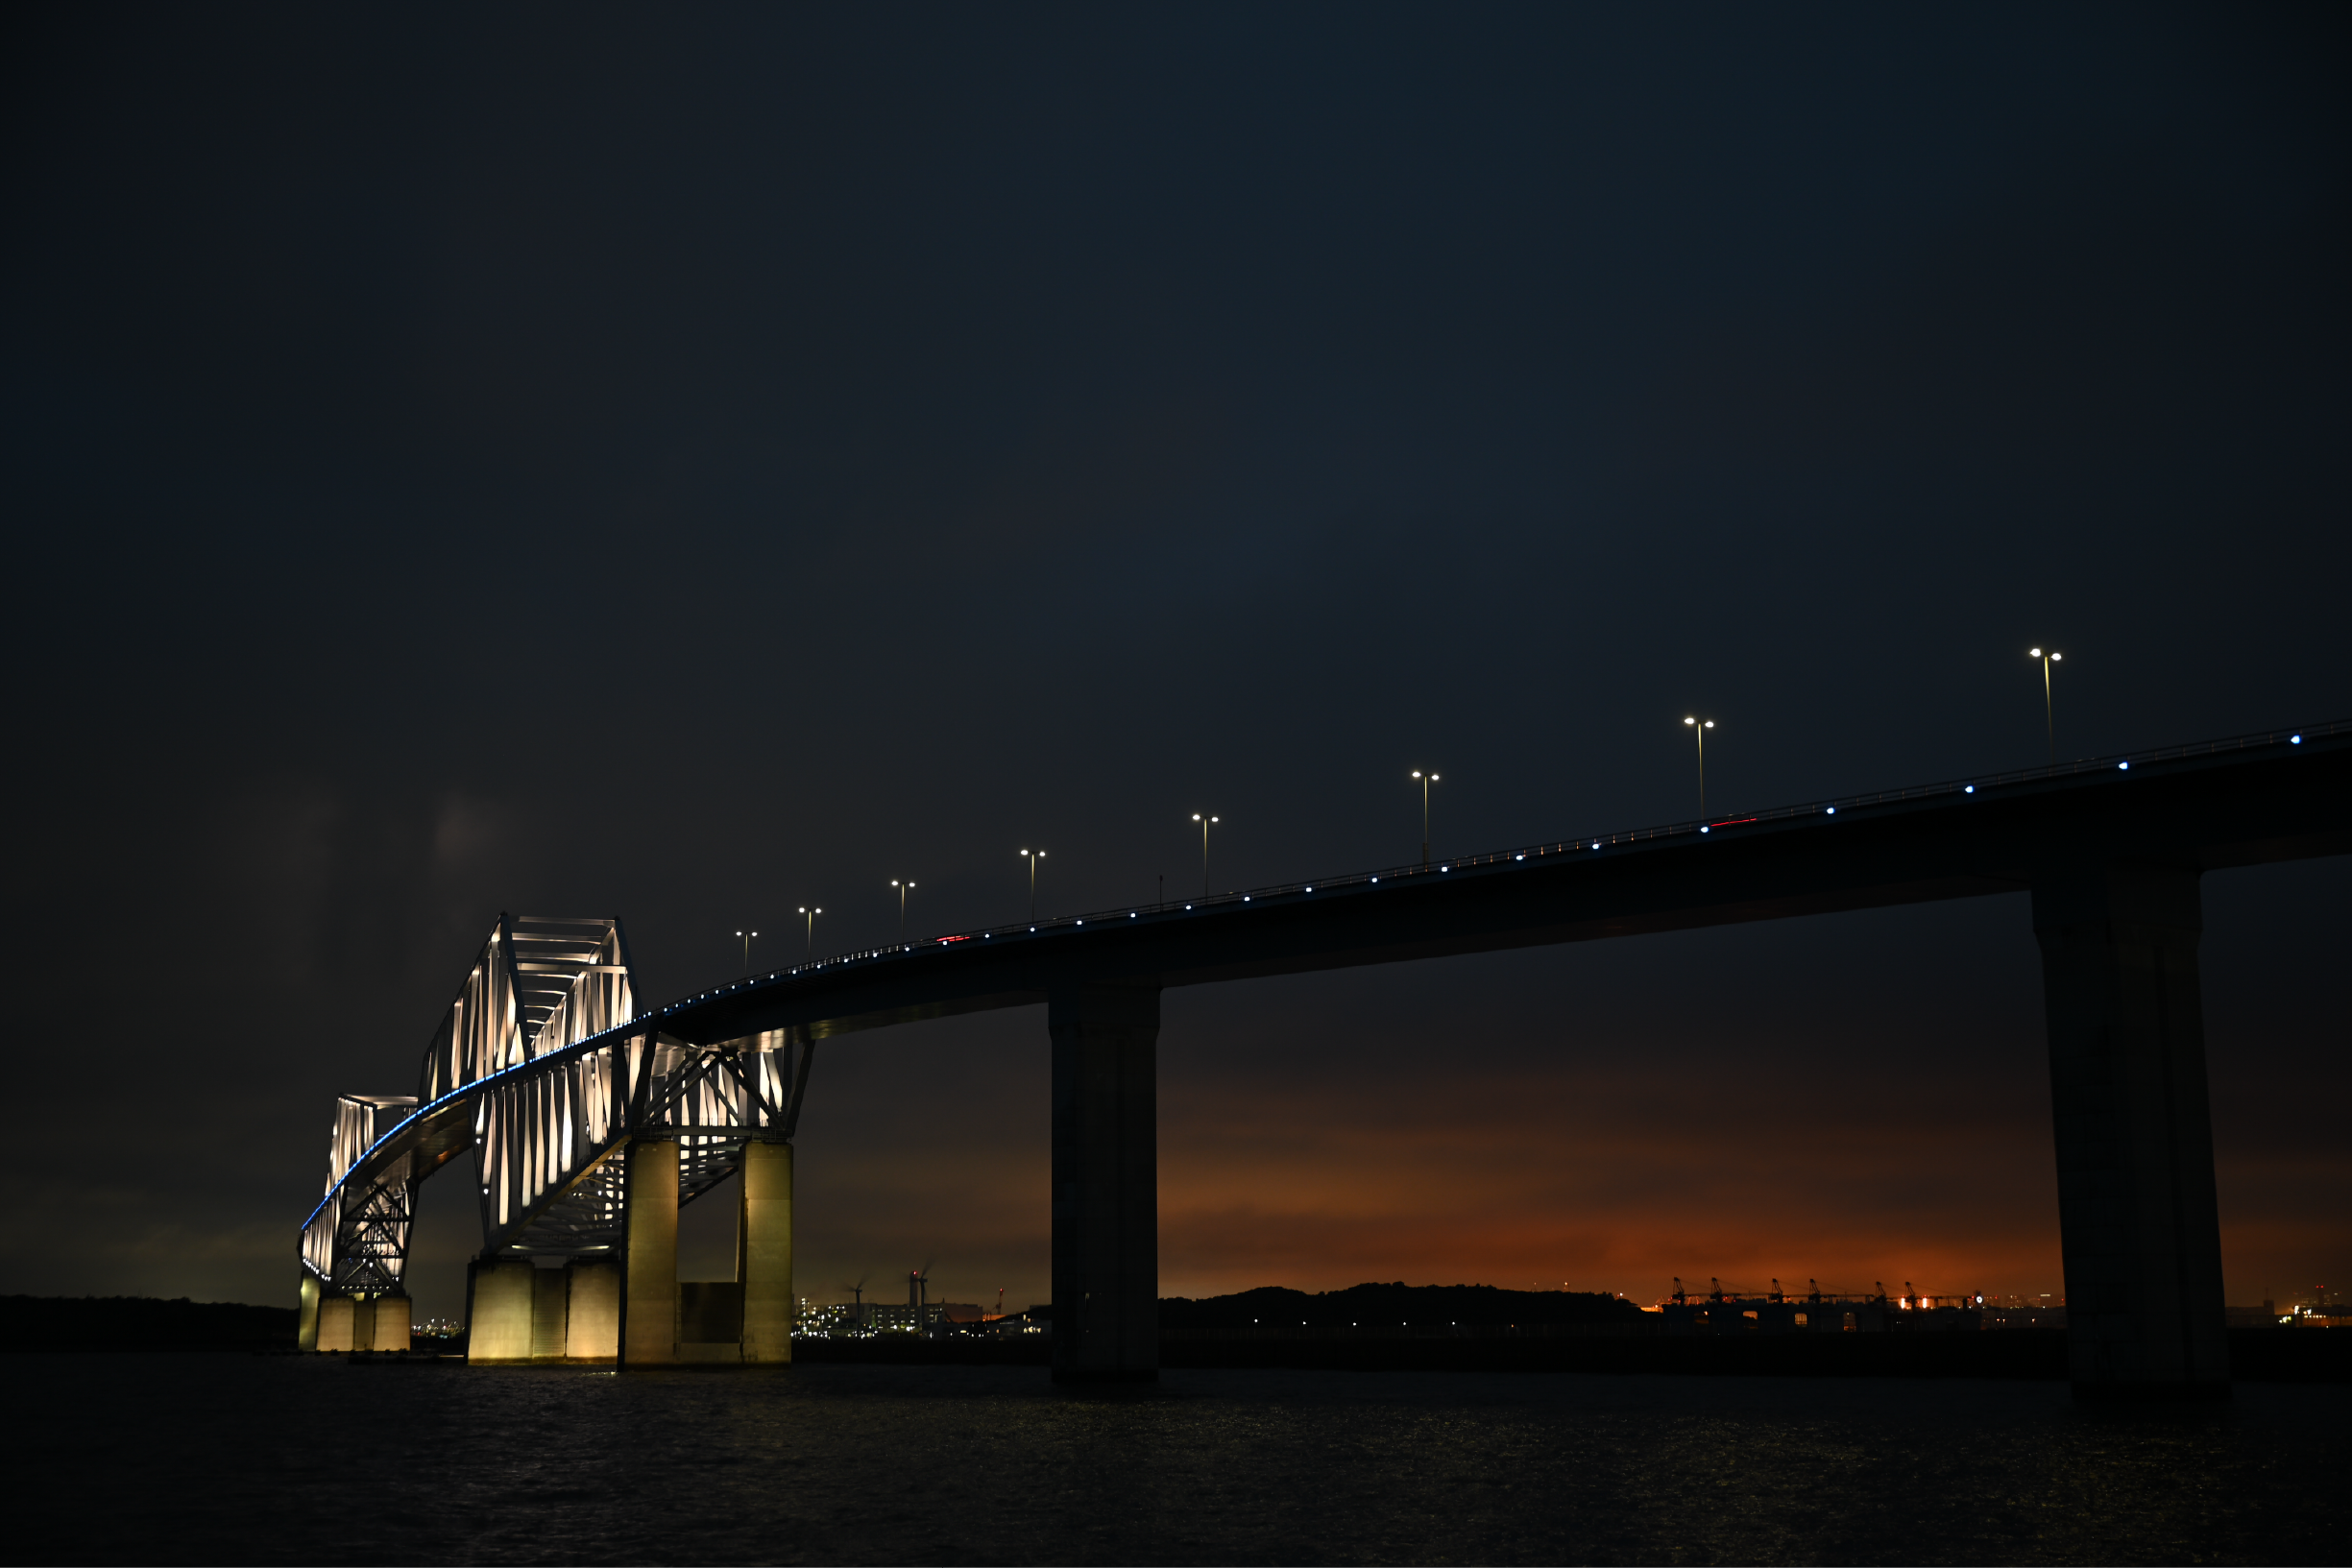 Bridge at Night | Nikon Cameras, Lenses & Accessories